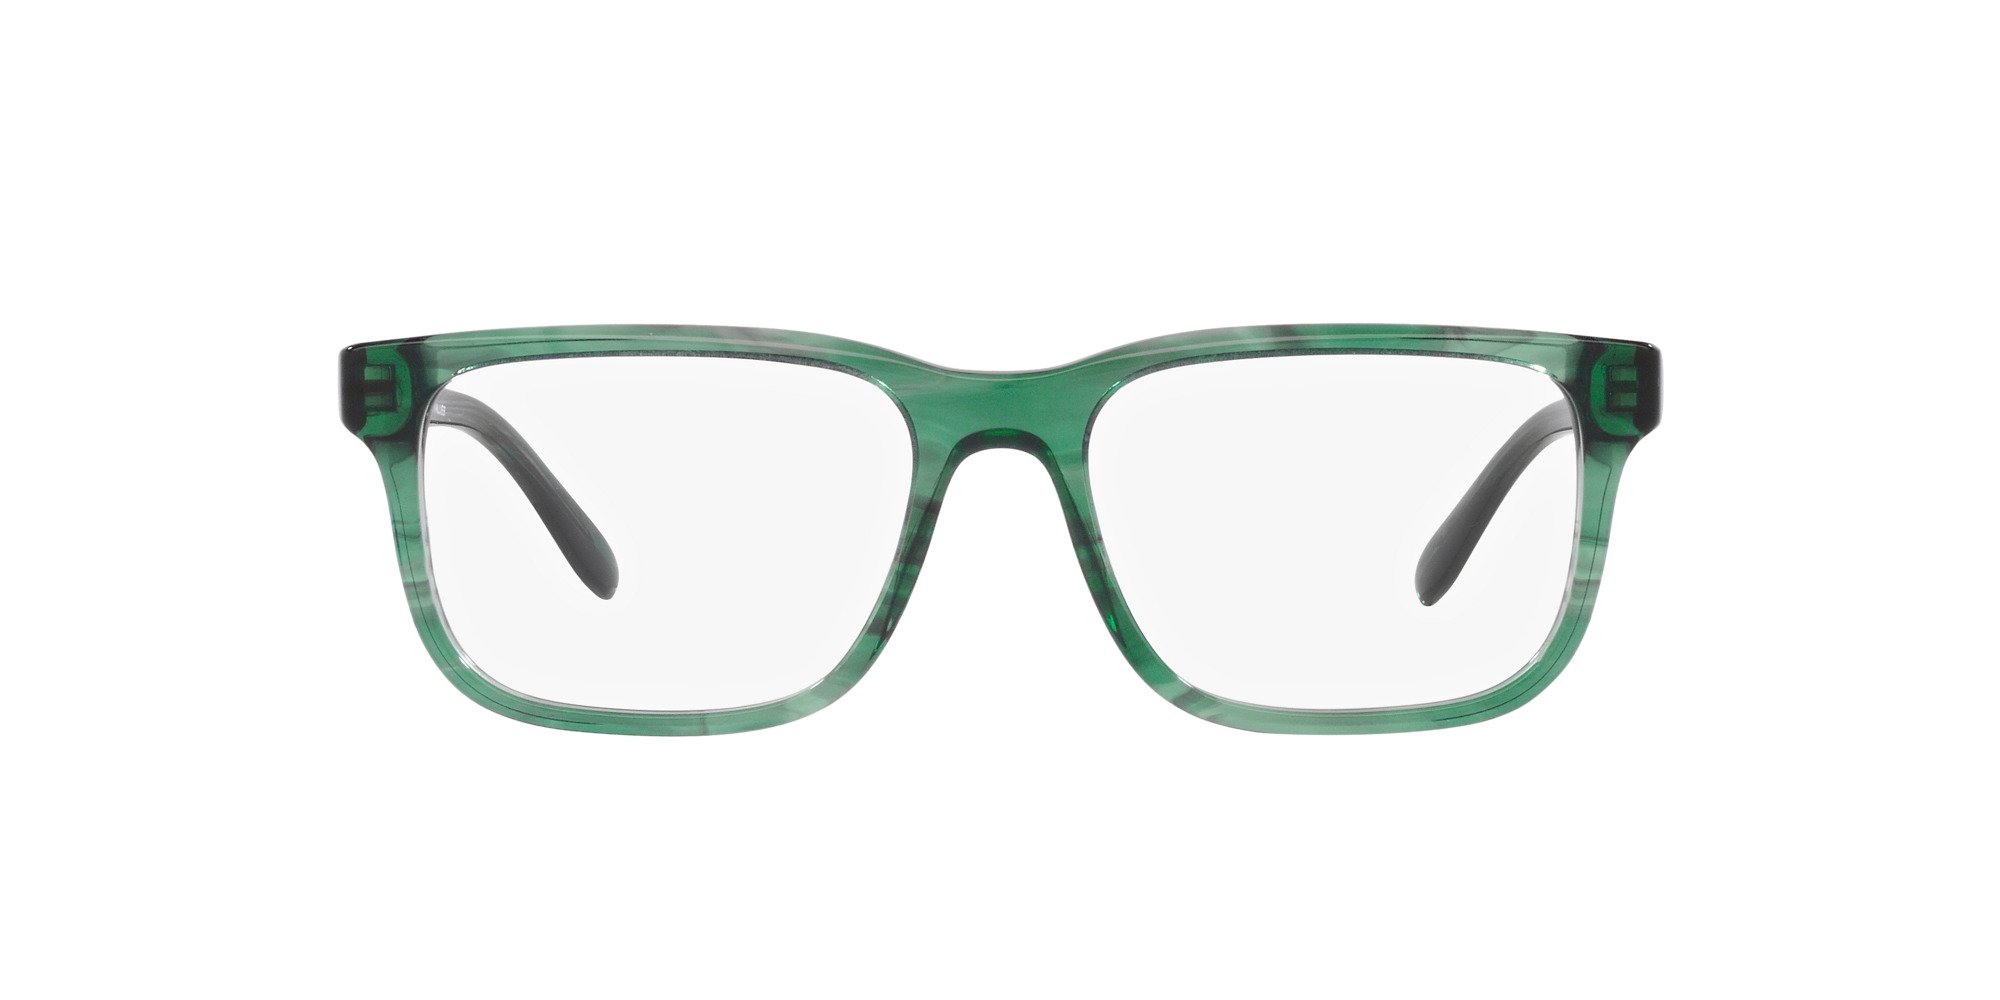 Das Bild zeigt die Korrektionsbrille EA3218 5168 von der Marke Emporio Armani in Grün.